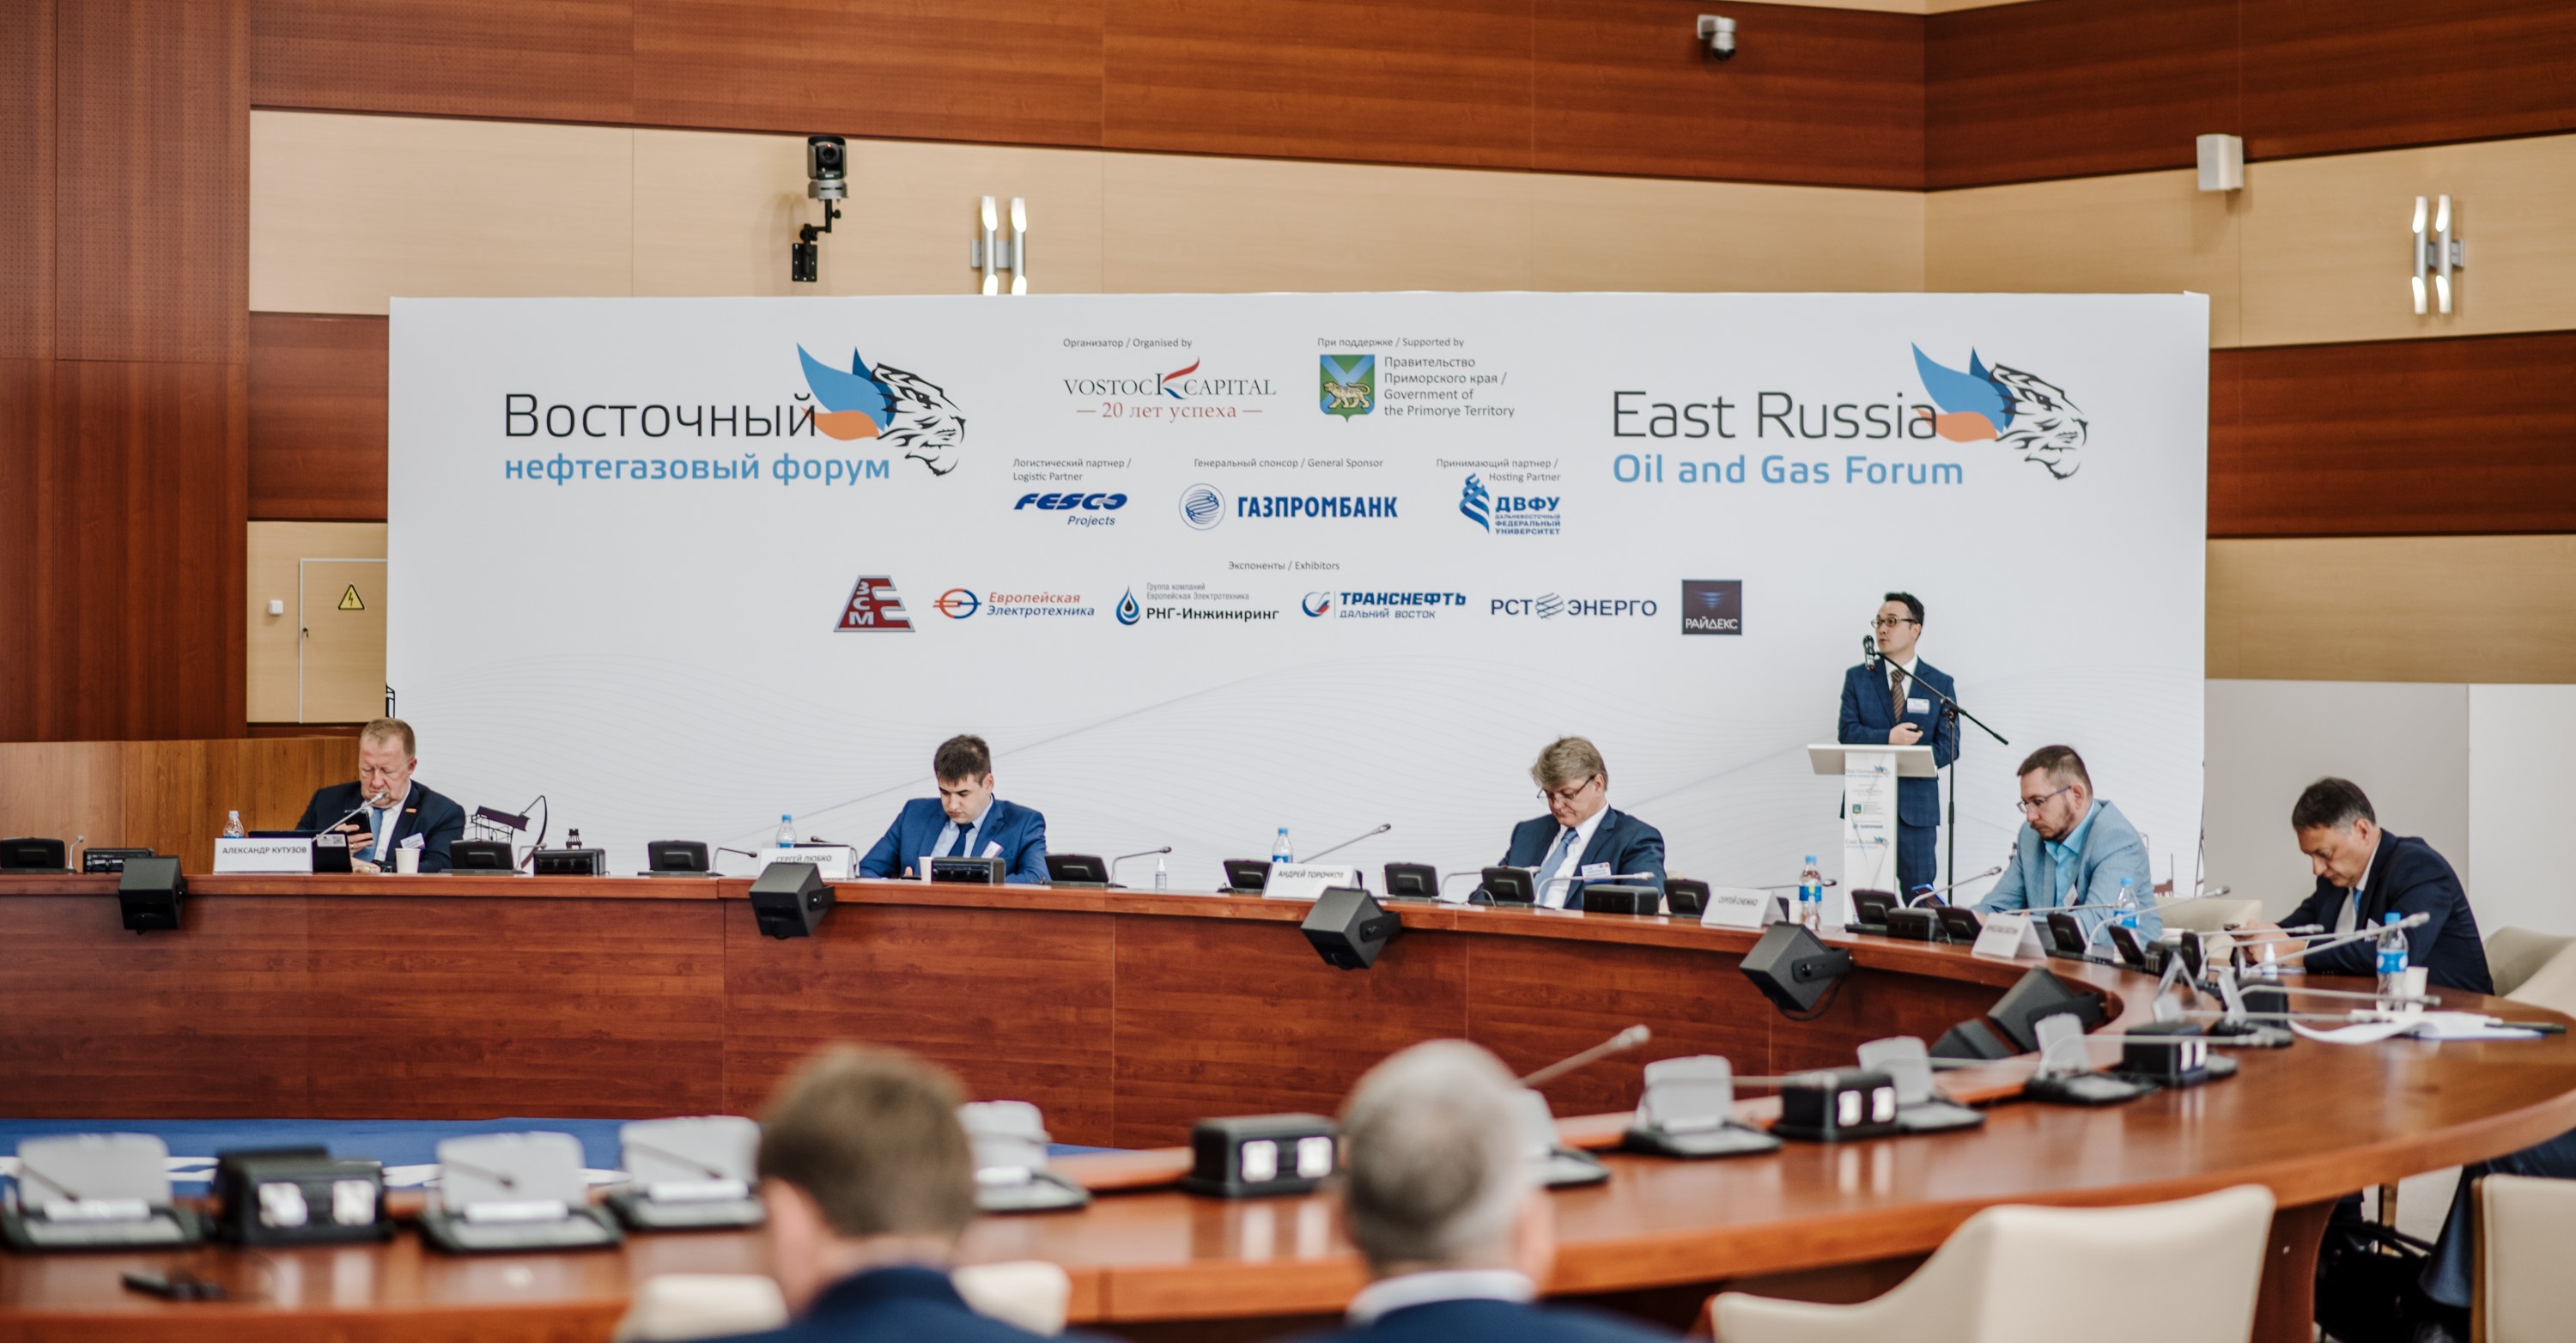 Компания PM Excellence приняла участие в 6-м ежегодном международном инвестиционном форуме "Восточный нефтегазовый форум" во Владивостоке